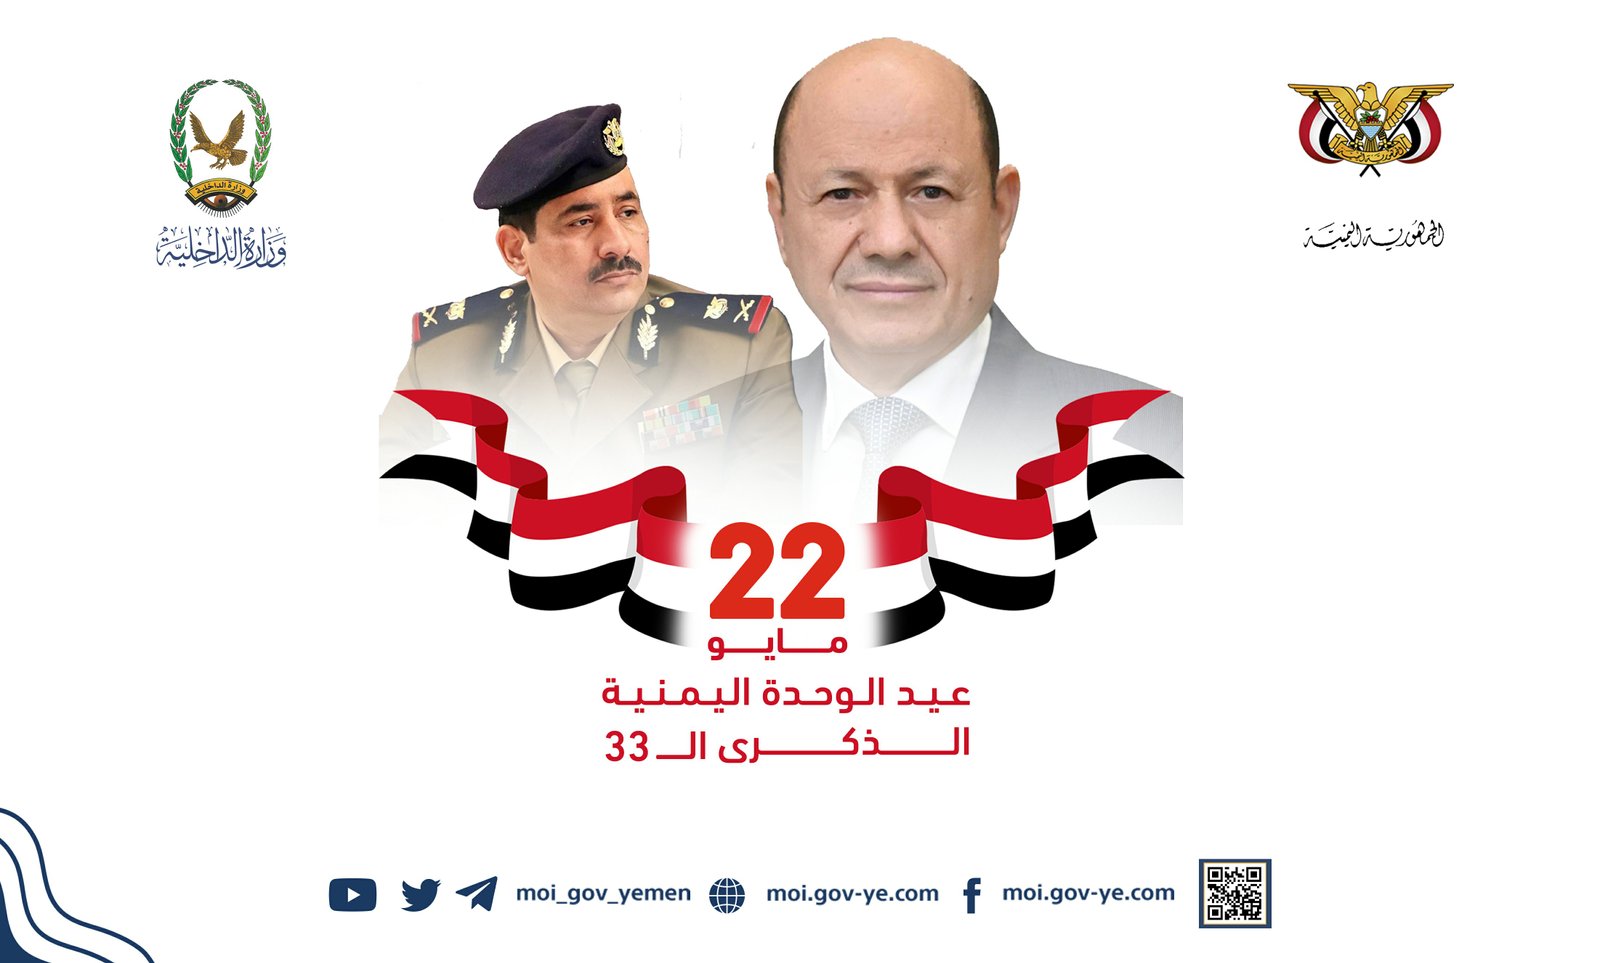 وزير الداخلية يهنئ رئيس مجلس القيادة الرئاسي بمناسبة العيد الثالث والثلاثين لتحقيق الوحدة اليمنية المجيدة